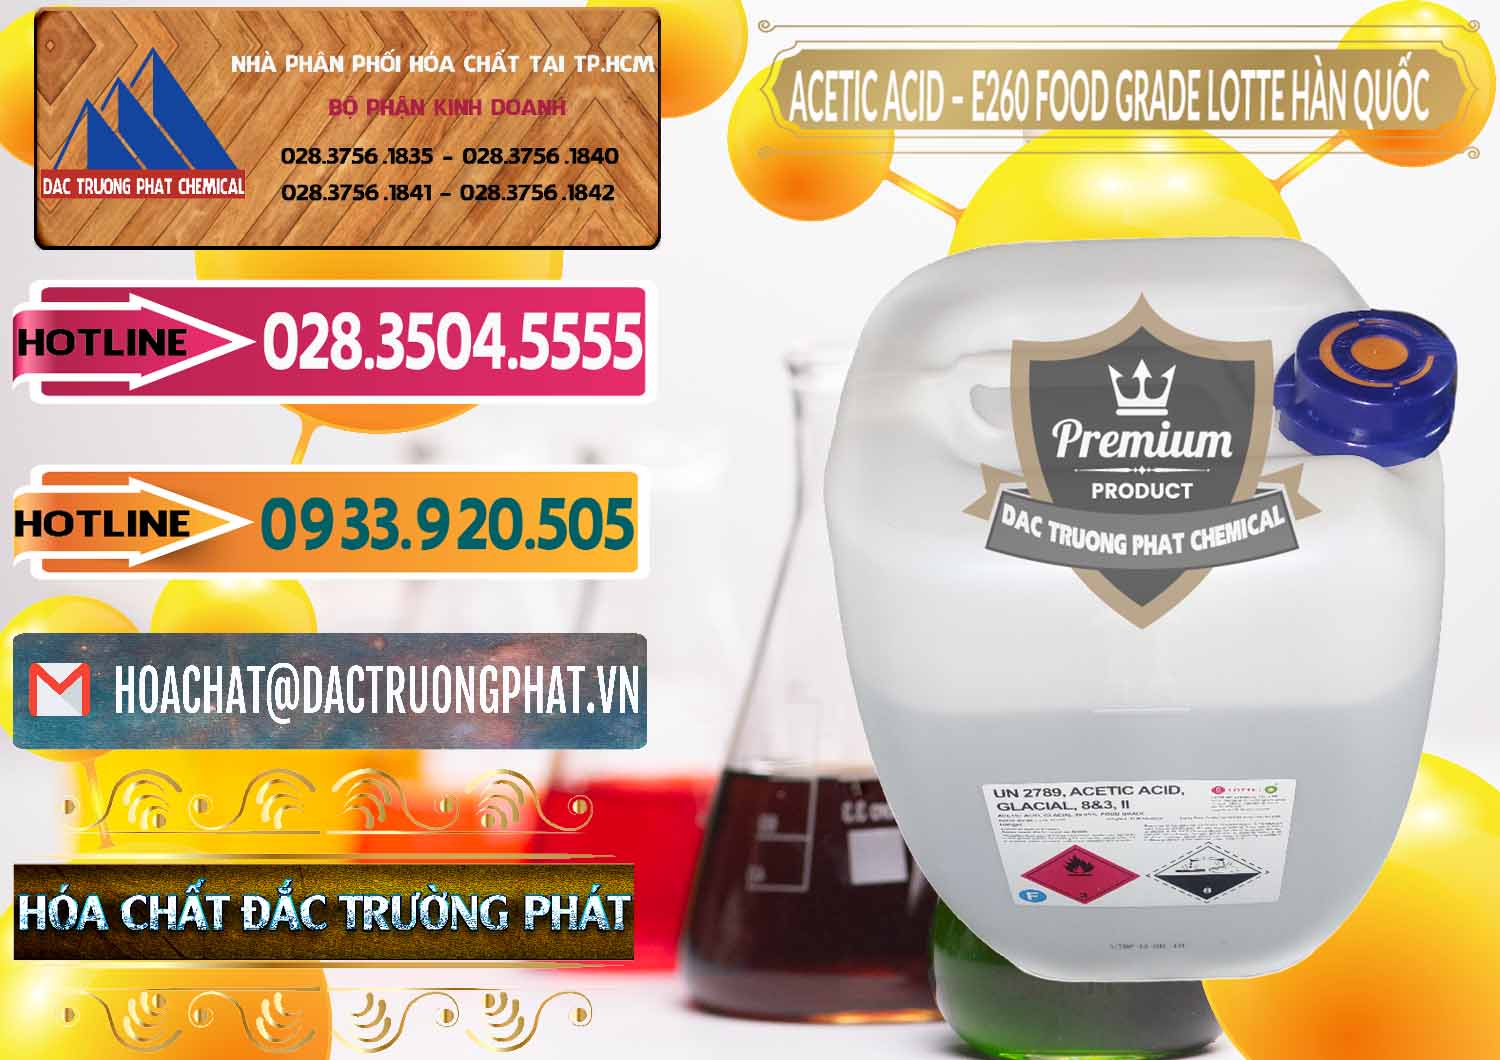 Đơn vị chuyên kinh doanh & bán Acetic Acid – Axit Acetic E260 Food Grade Hàn Quốc Lotte Korea - 0003 - Nhà cung cấp ( phân phối ) hóa chất tại TP.HCM - dactruongphat.vn